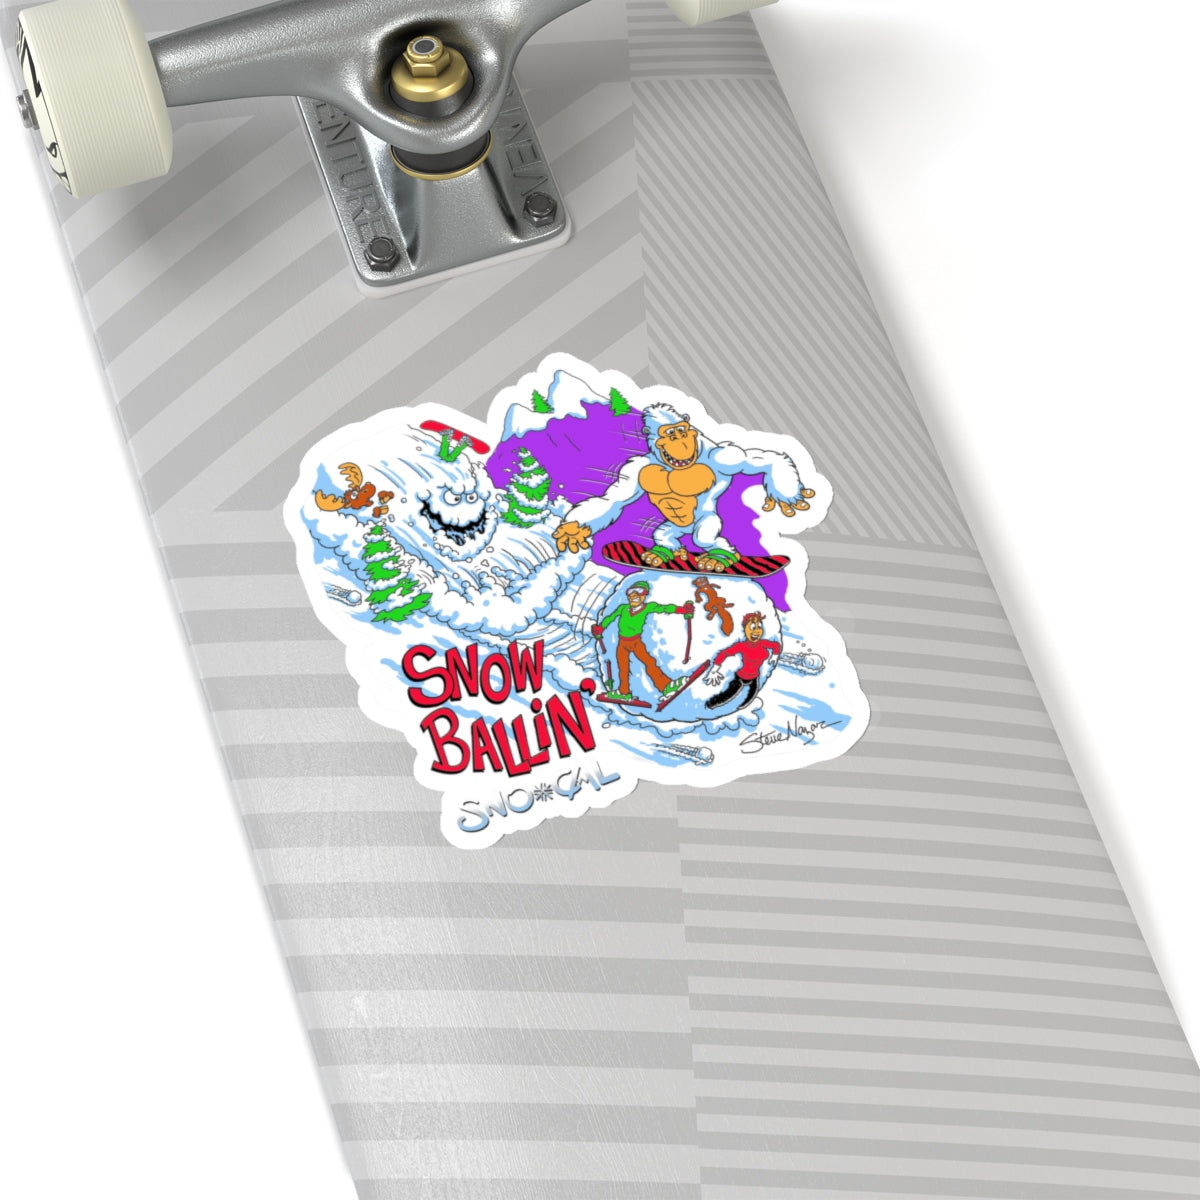 Snorilla SnowBallin' snowboard sticker - Sno Cal